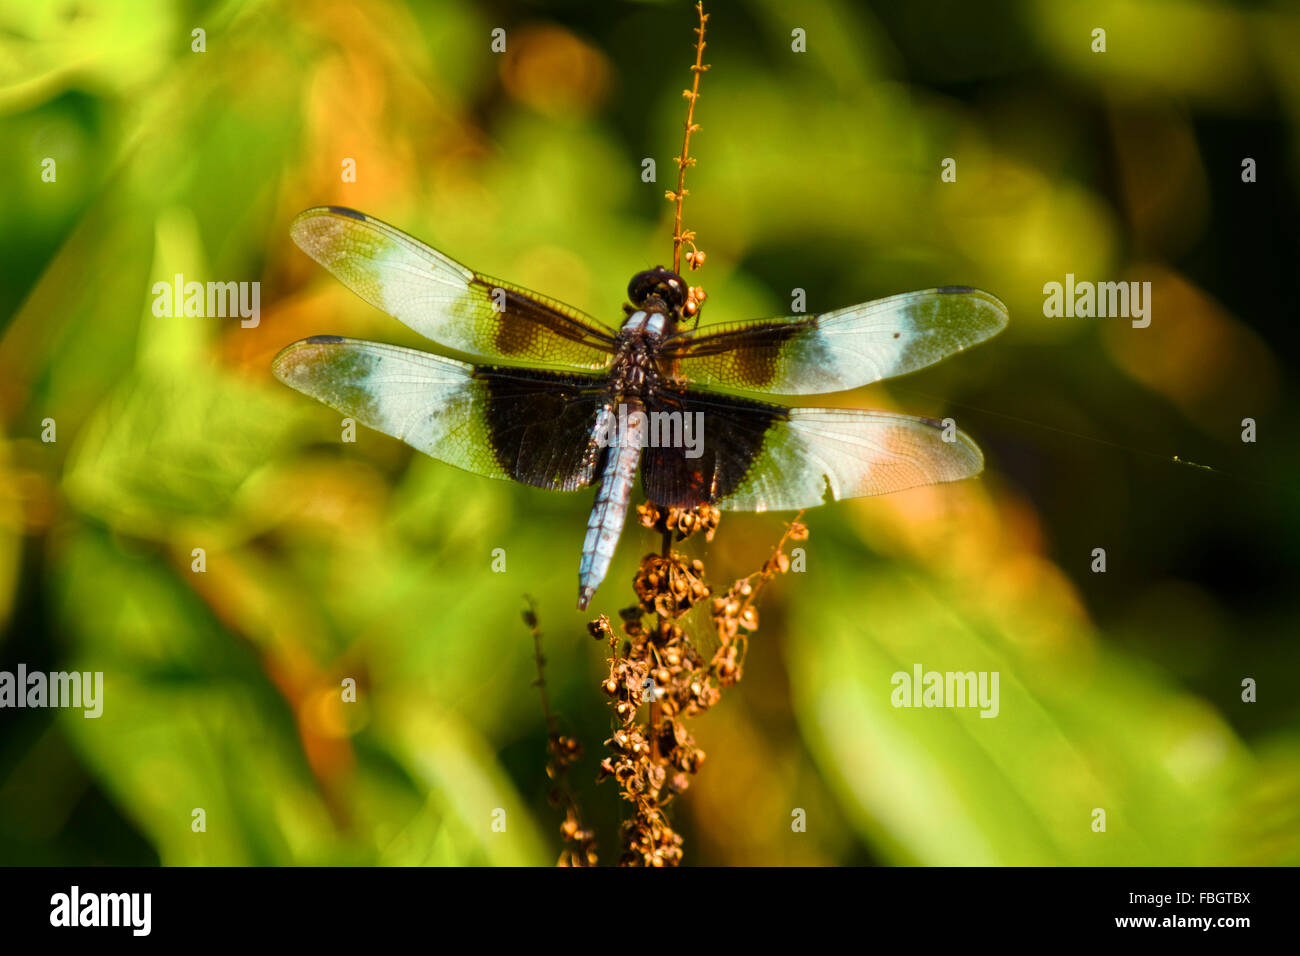 Una viuda skimmer dragonfly insecto descansa sobre un vástago de malezas. Foto de stock